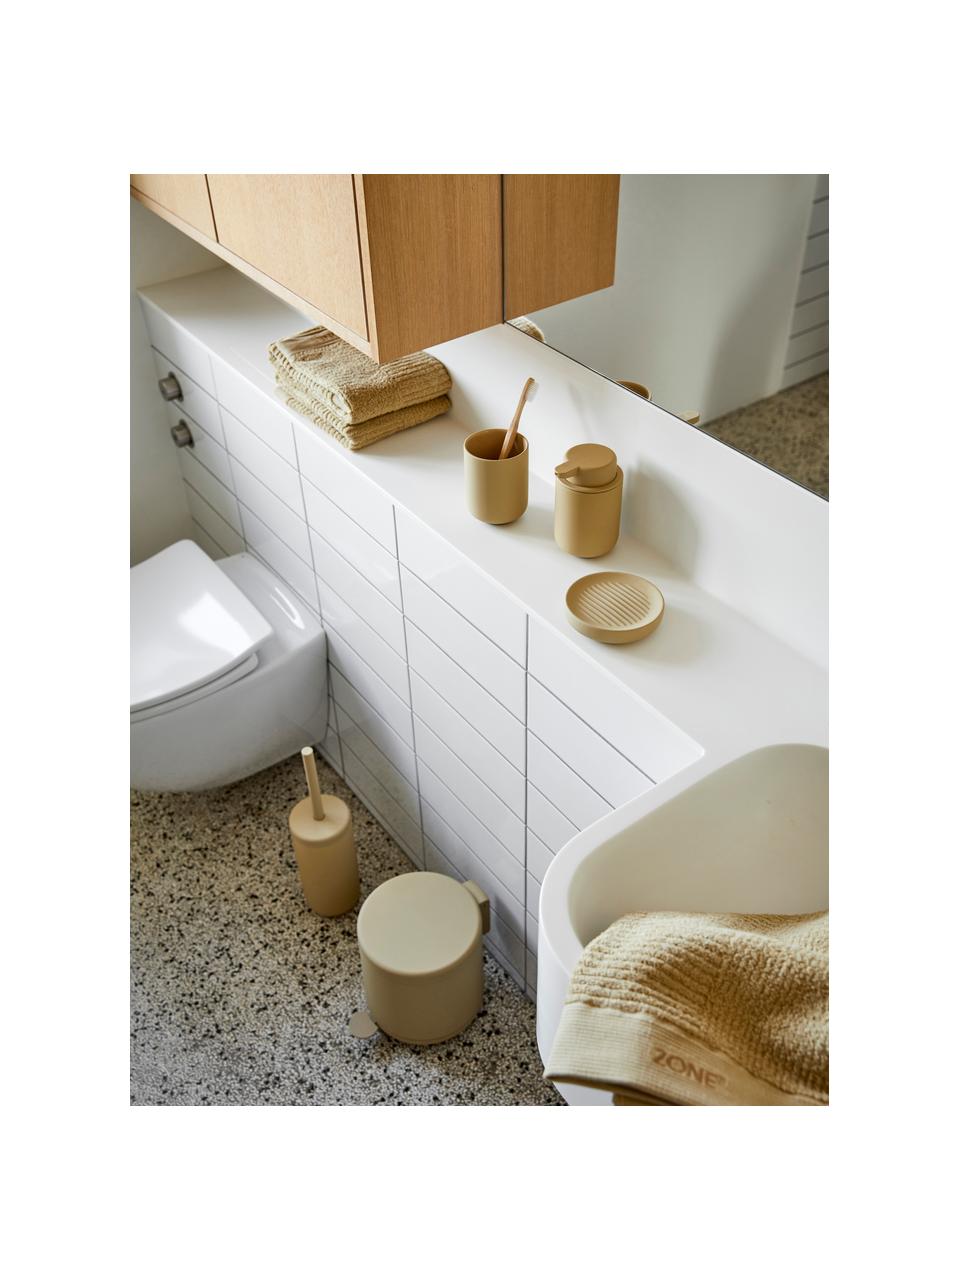 Toilettenbürste Ume mit Steingut-Behälter, Behälter: Steingut überzogen mit So, Griff: Kunststoff, Sandfarben, Ø 10 x H 39 cm